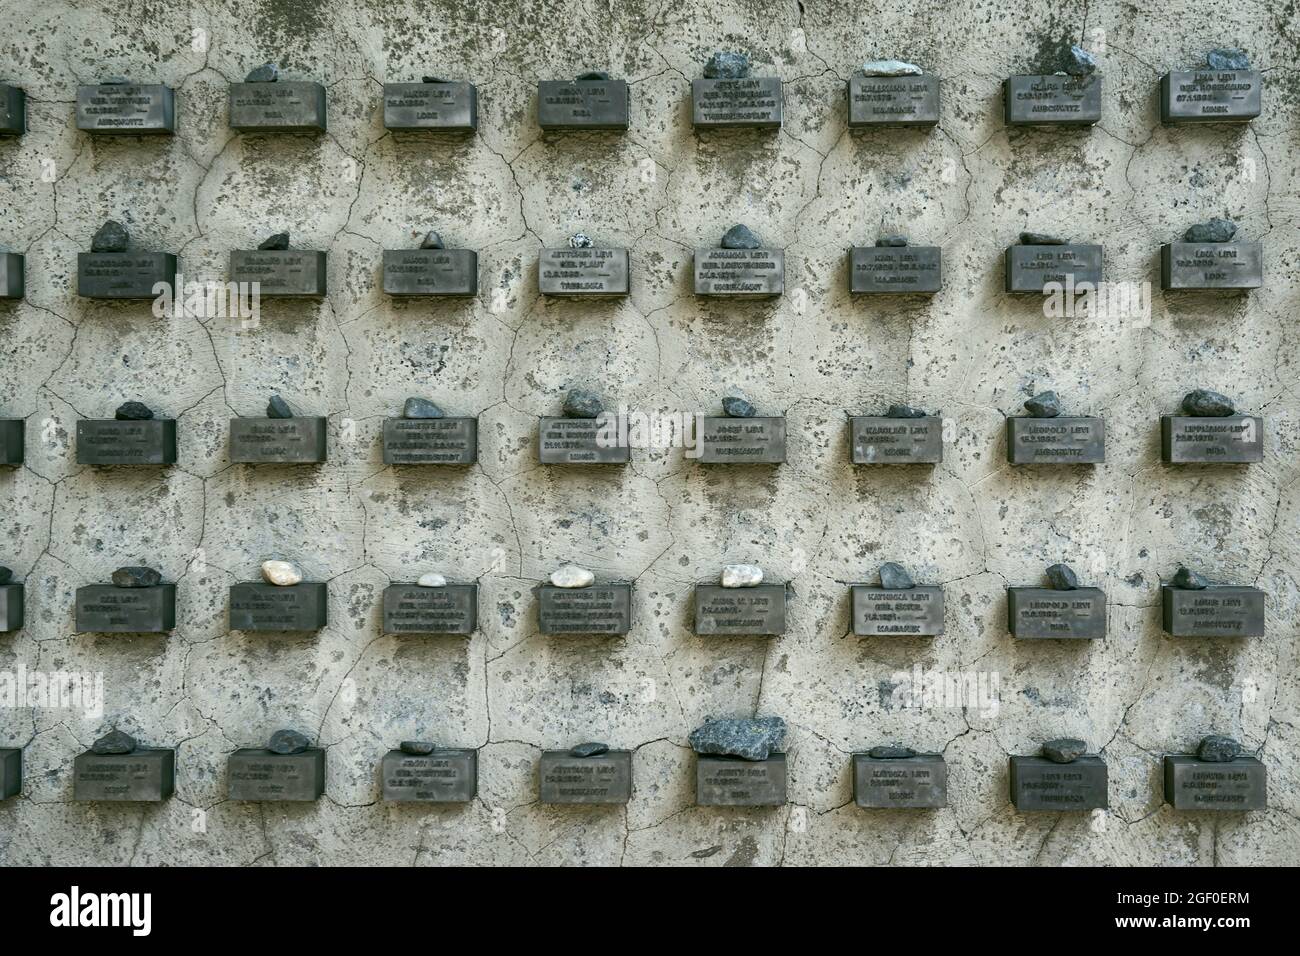 Namensblöcke, Erinnerung an die Ermordung der Frankfurter Juden, Außenmauer, alter jüdischer Friedhof, Battonstraße, Frankfurt Stock Photo